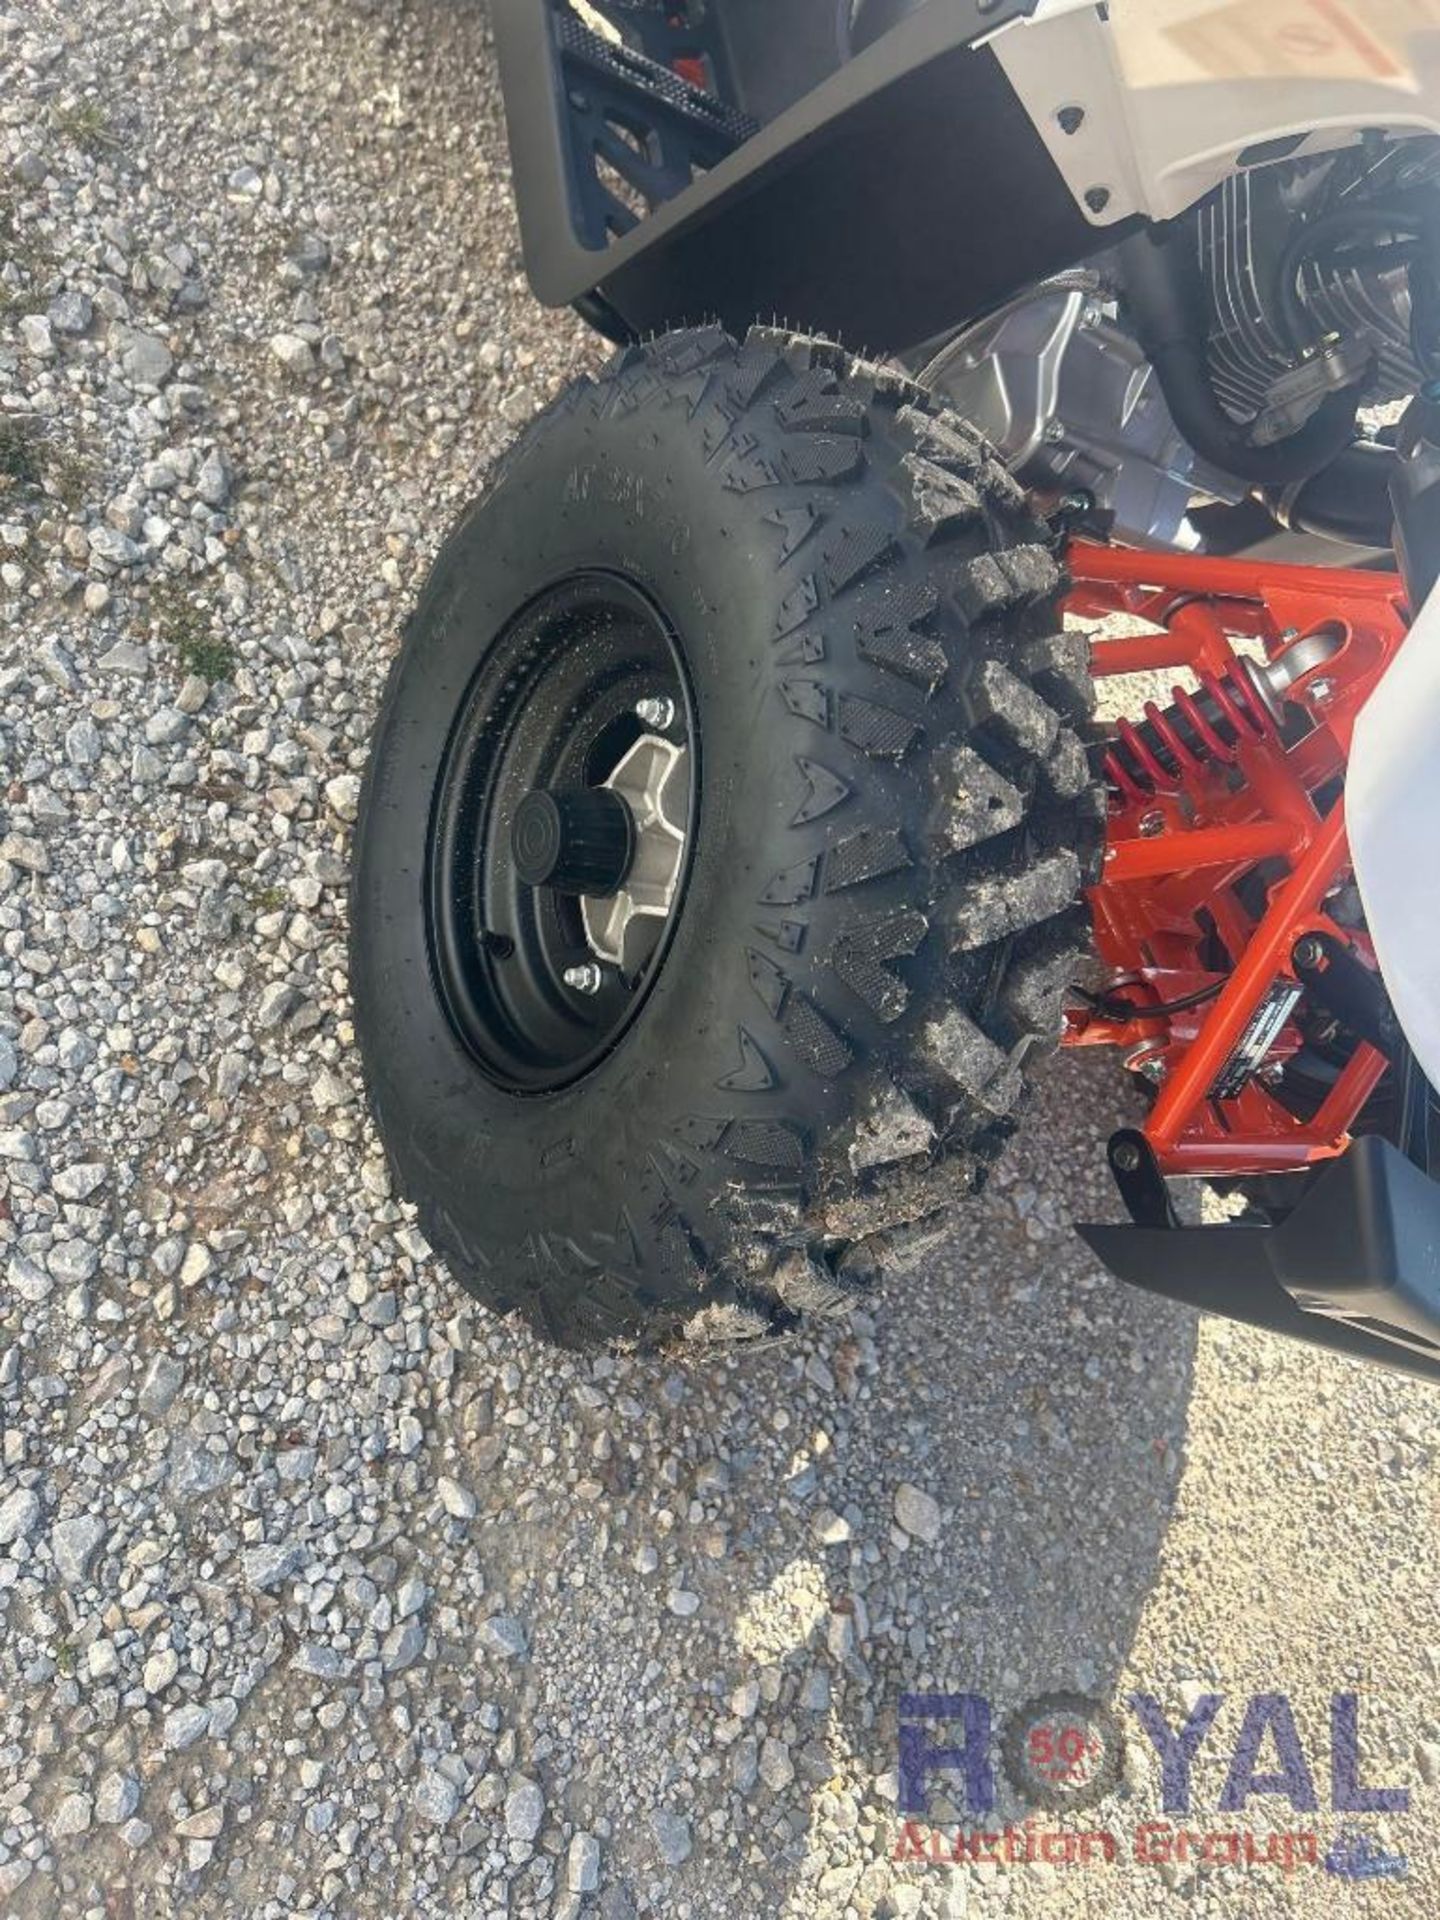 Unused Kayo Bull 200cc ATV - Image 17 of 19